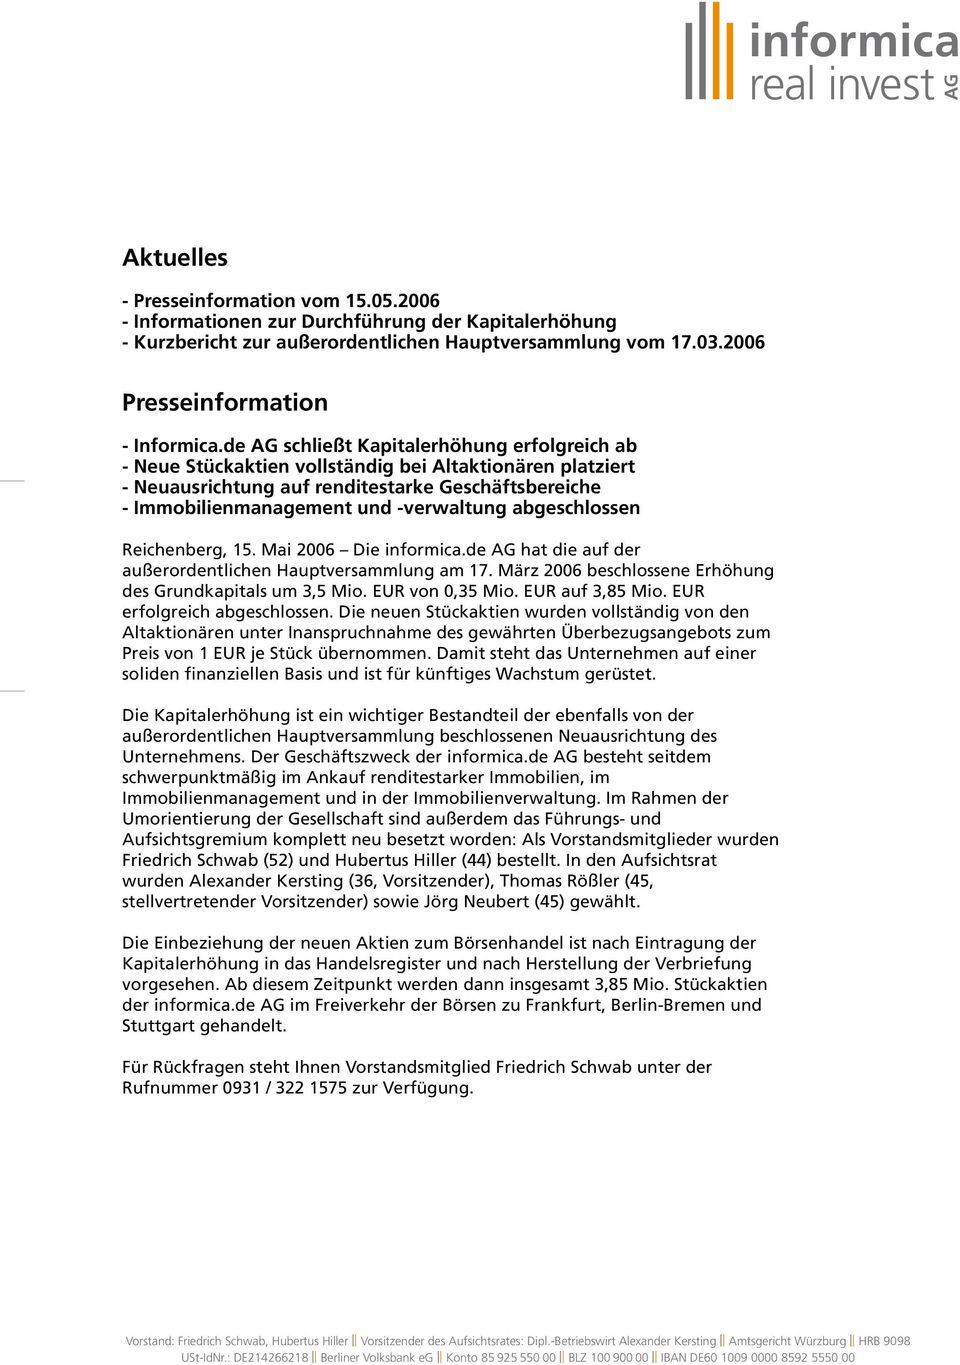 abgeschlossen Reichenberg, 15. Mai 2006 Die informica.de hat die auf der außerordentlichen Hauptversammlung am 17. März 2006 beschlossene Erhöhung des Grundkapitals um 3,5 Mio. EUR von 0,35 Mio.